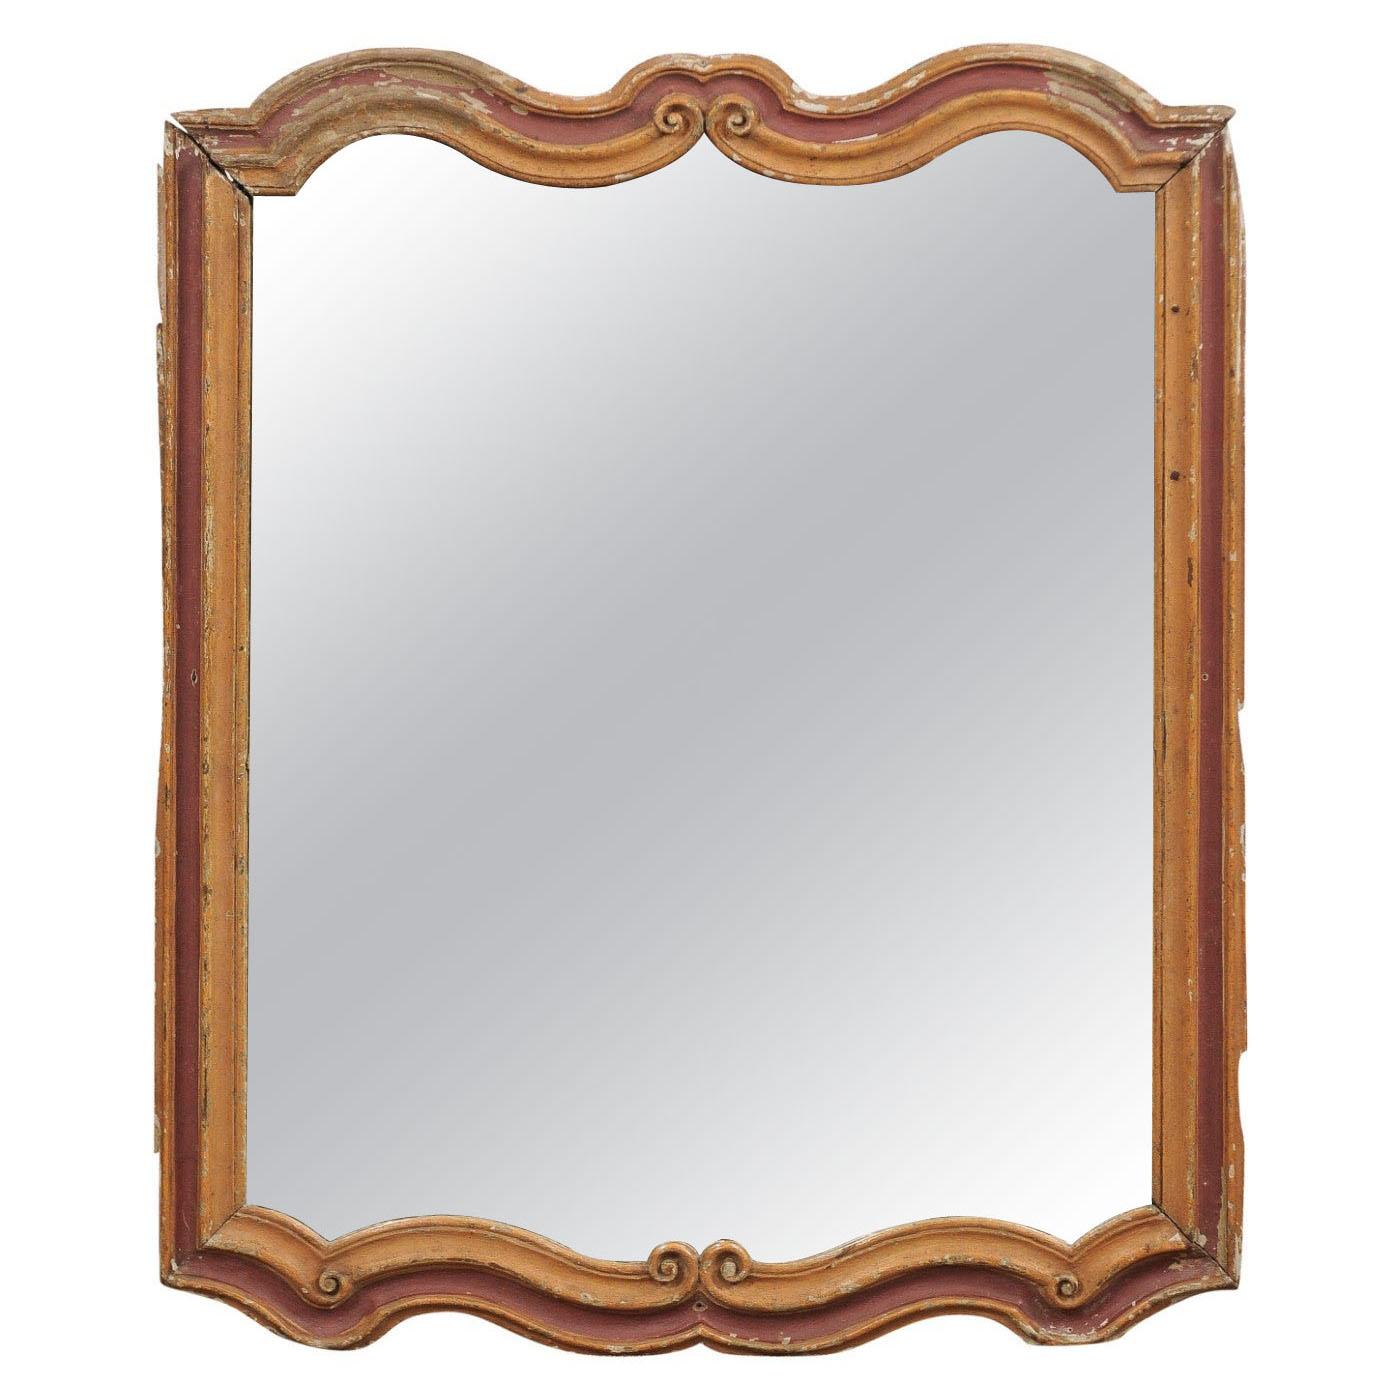 Cadre peint de style rococo italien du 19ème siècle avec plaque de miroir